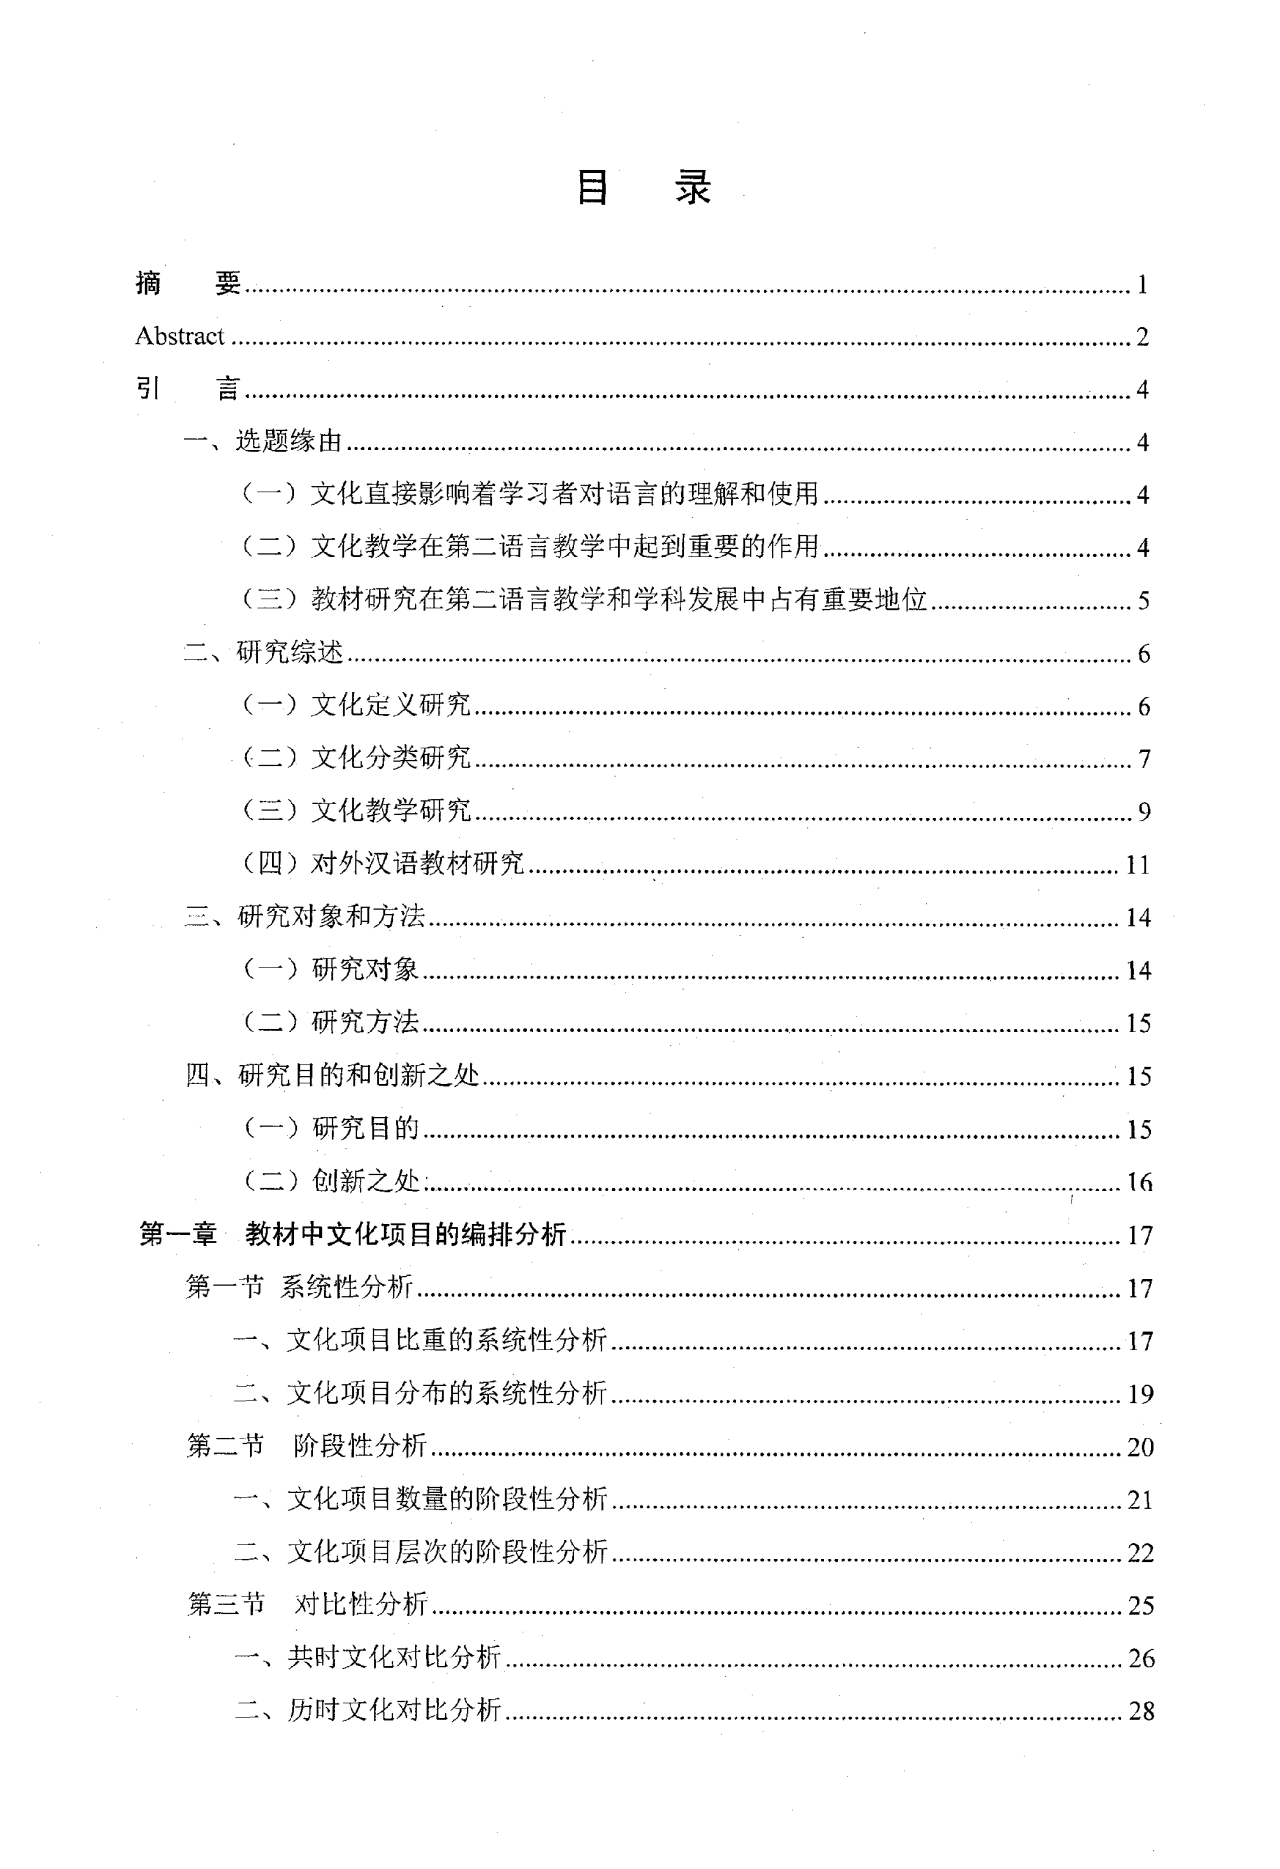 对外汉语教材文化项目编排考察分析——以《发展汉语》等四套教材为例